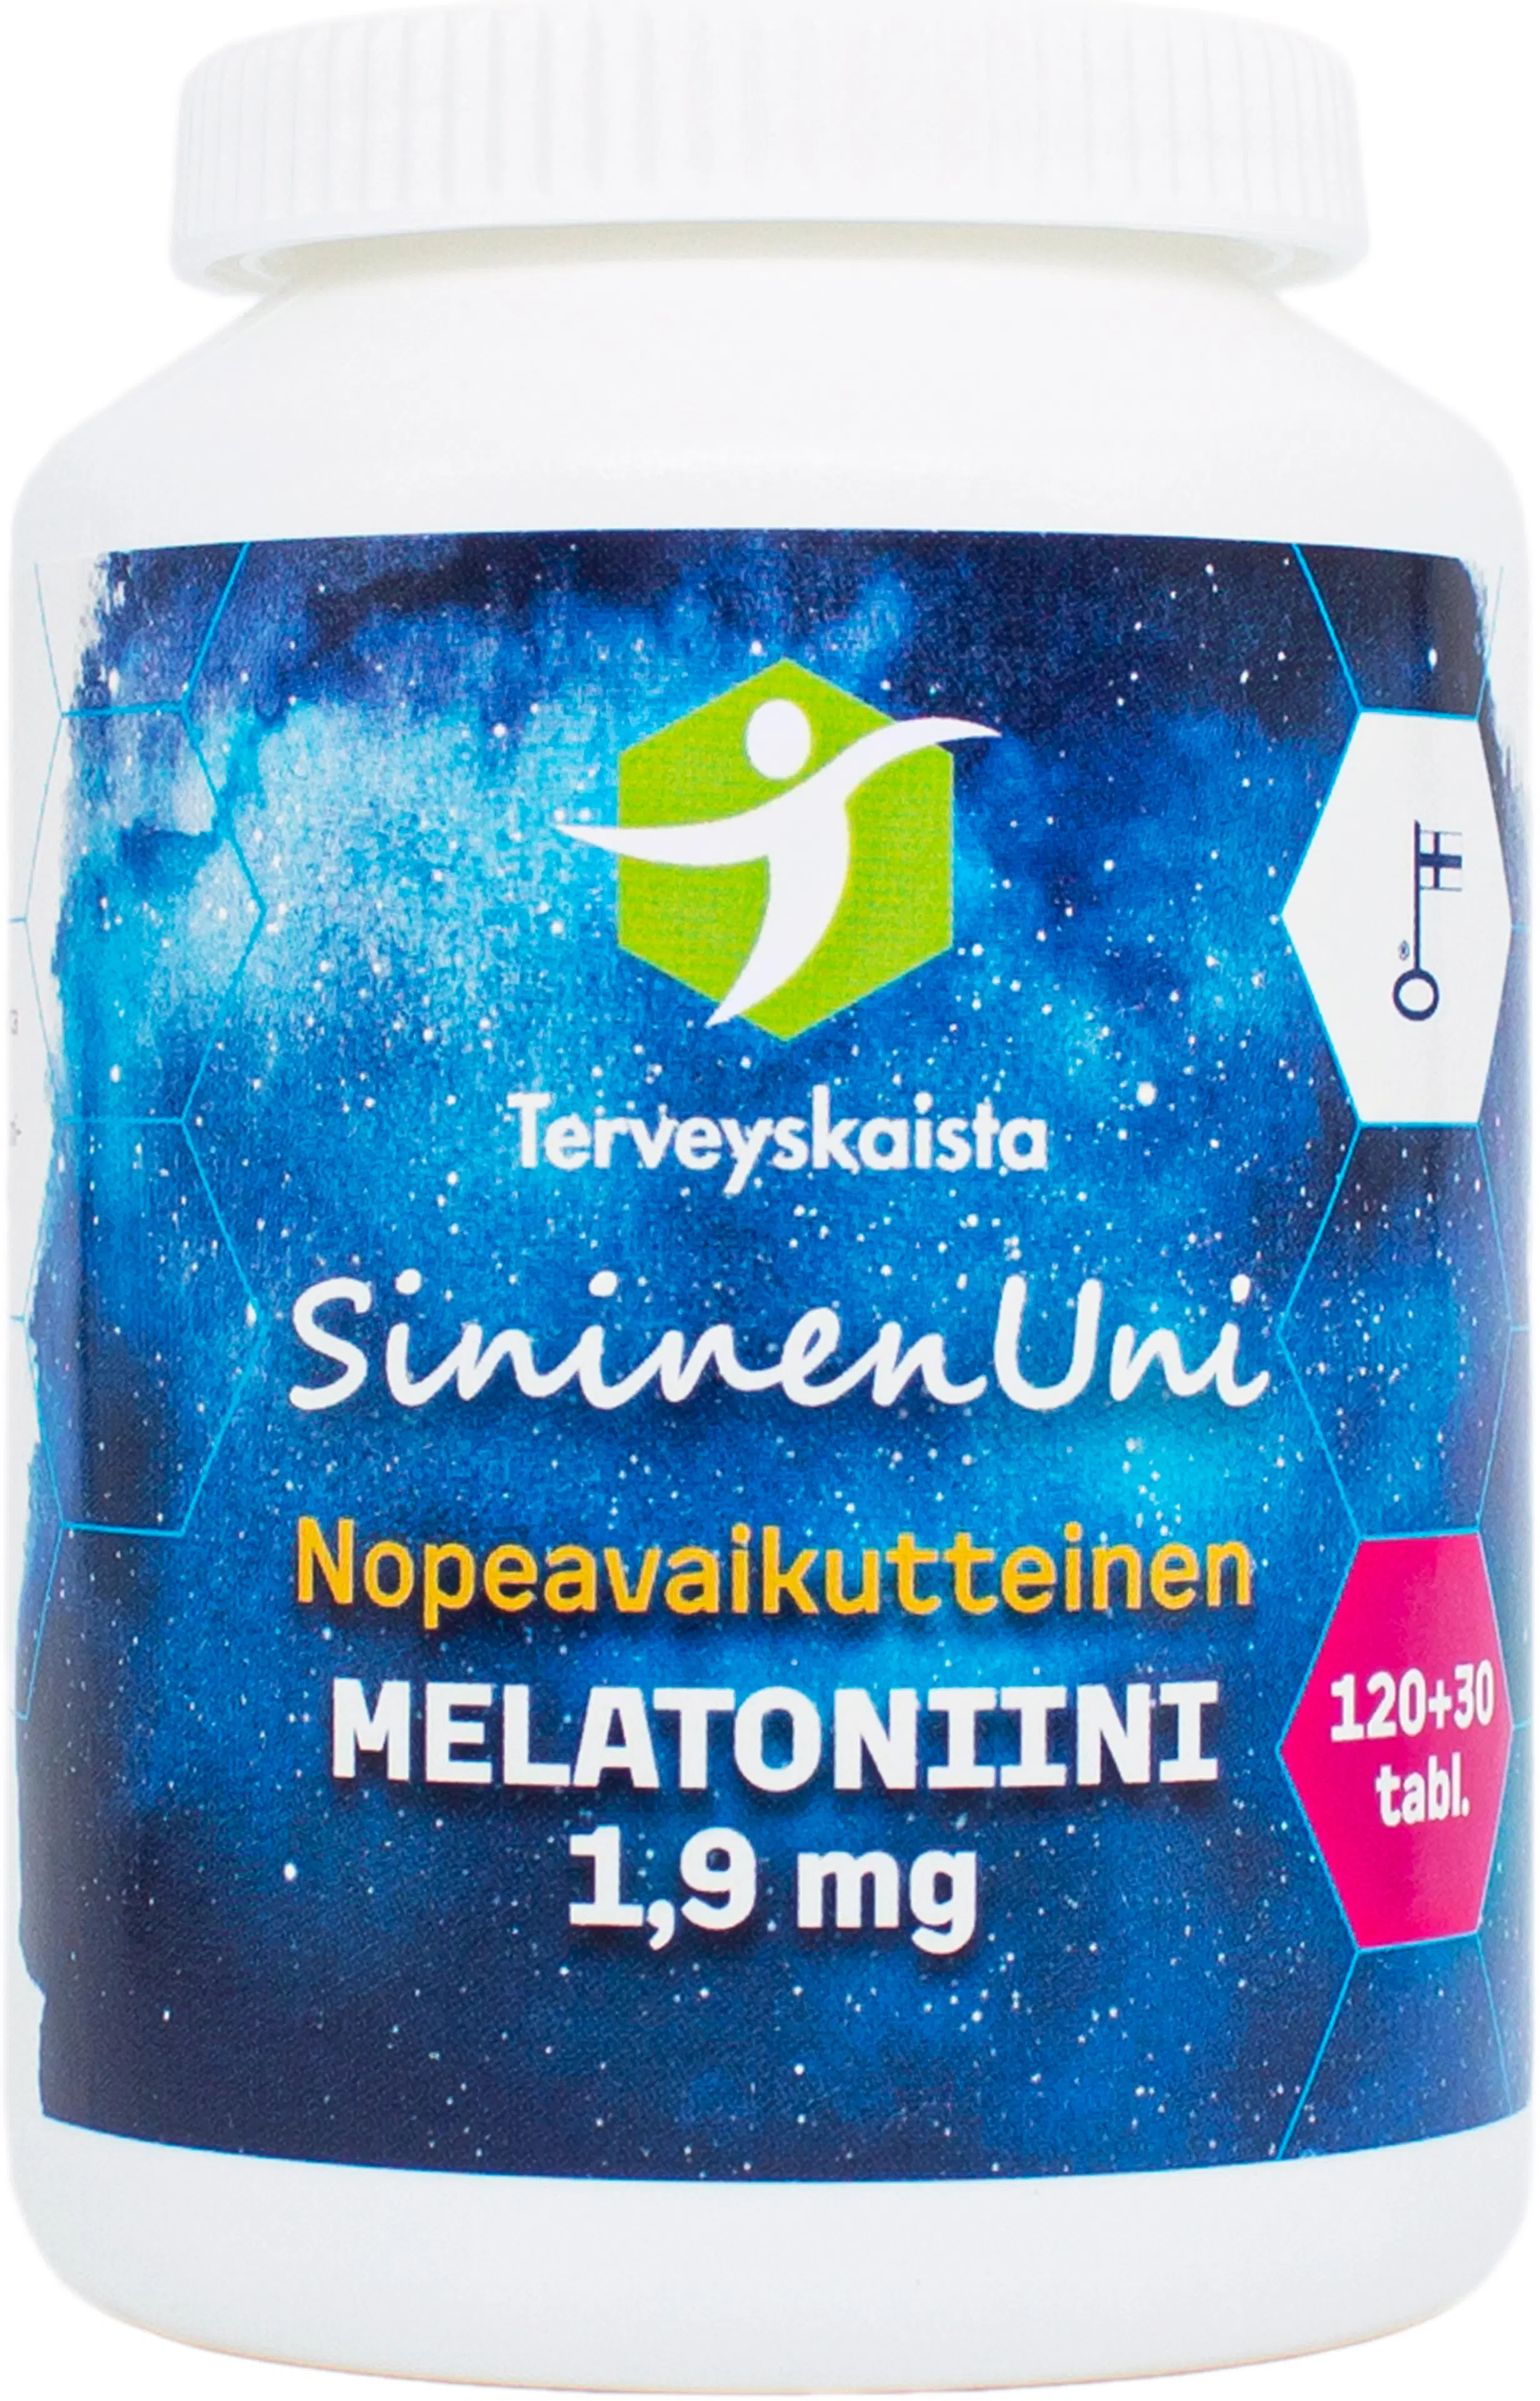 Terveyskaistan SininenUni melatoniini 1,9 mg 150 tabl.